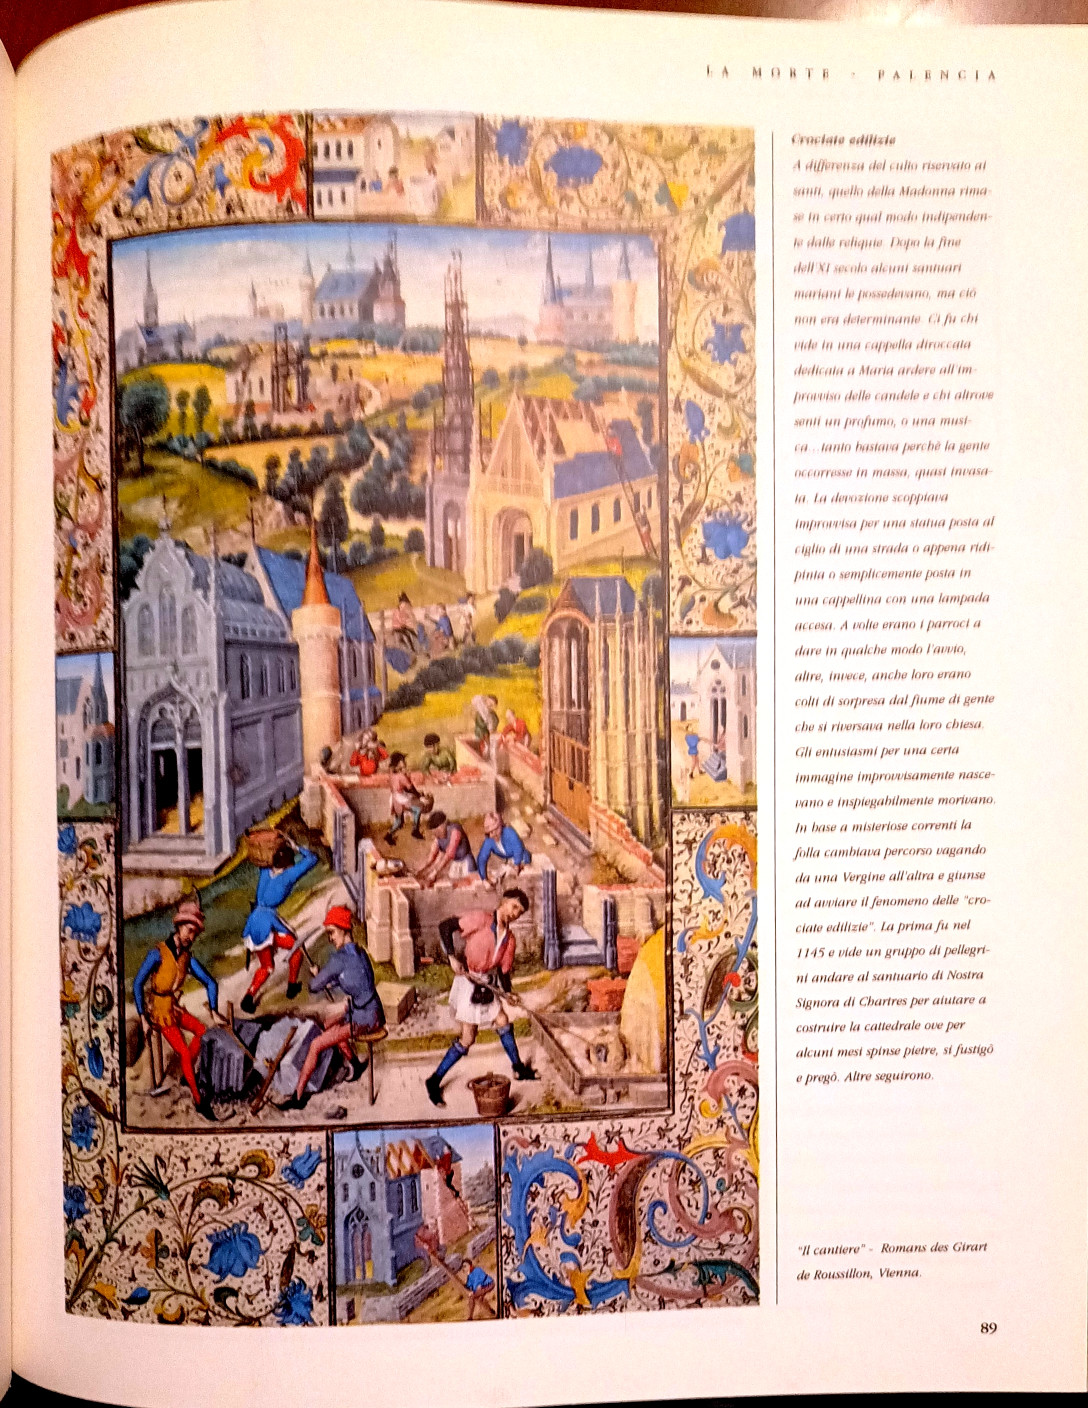 Francesca Romana Lepore, Andando a Santiago de Compostela. Storia, leggende, luoghi, percorso, Ed. Idealibri, 2000